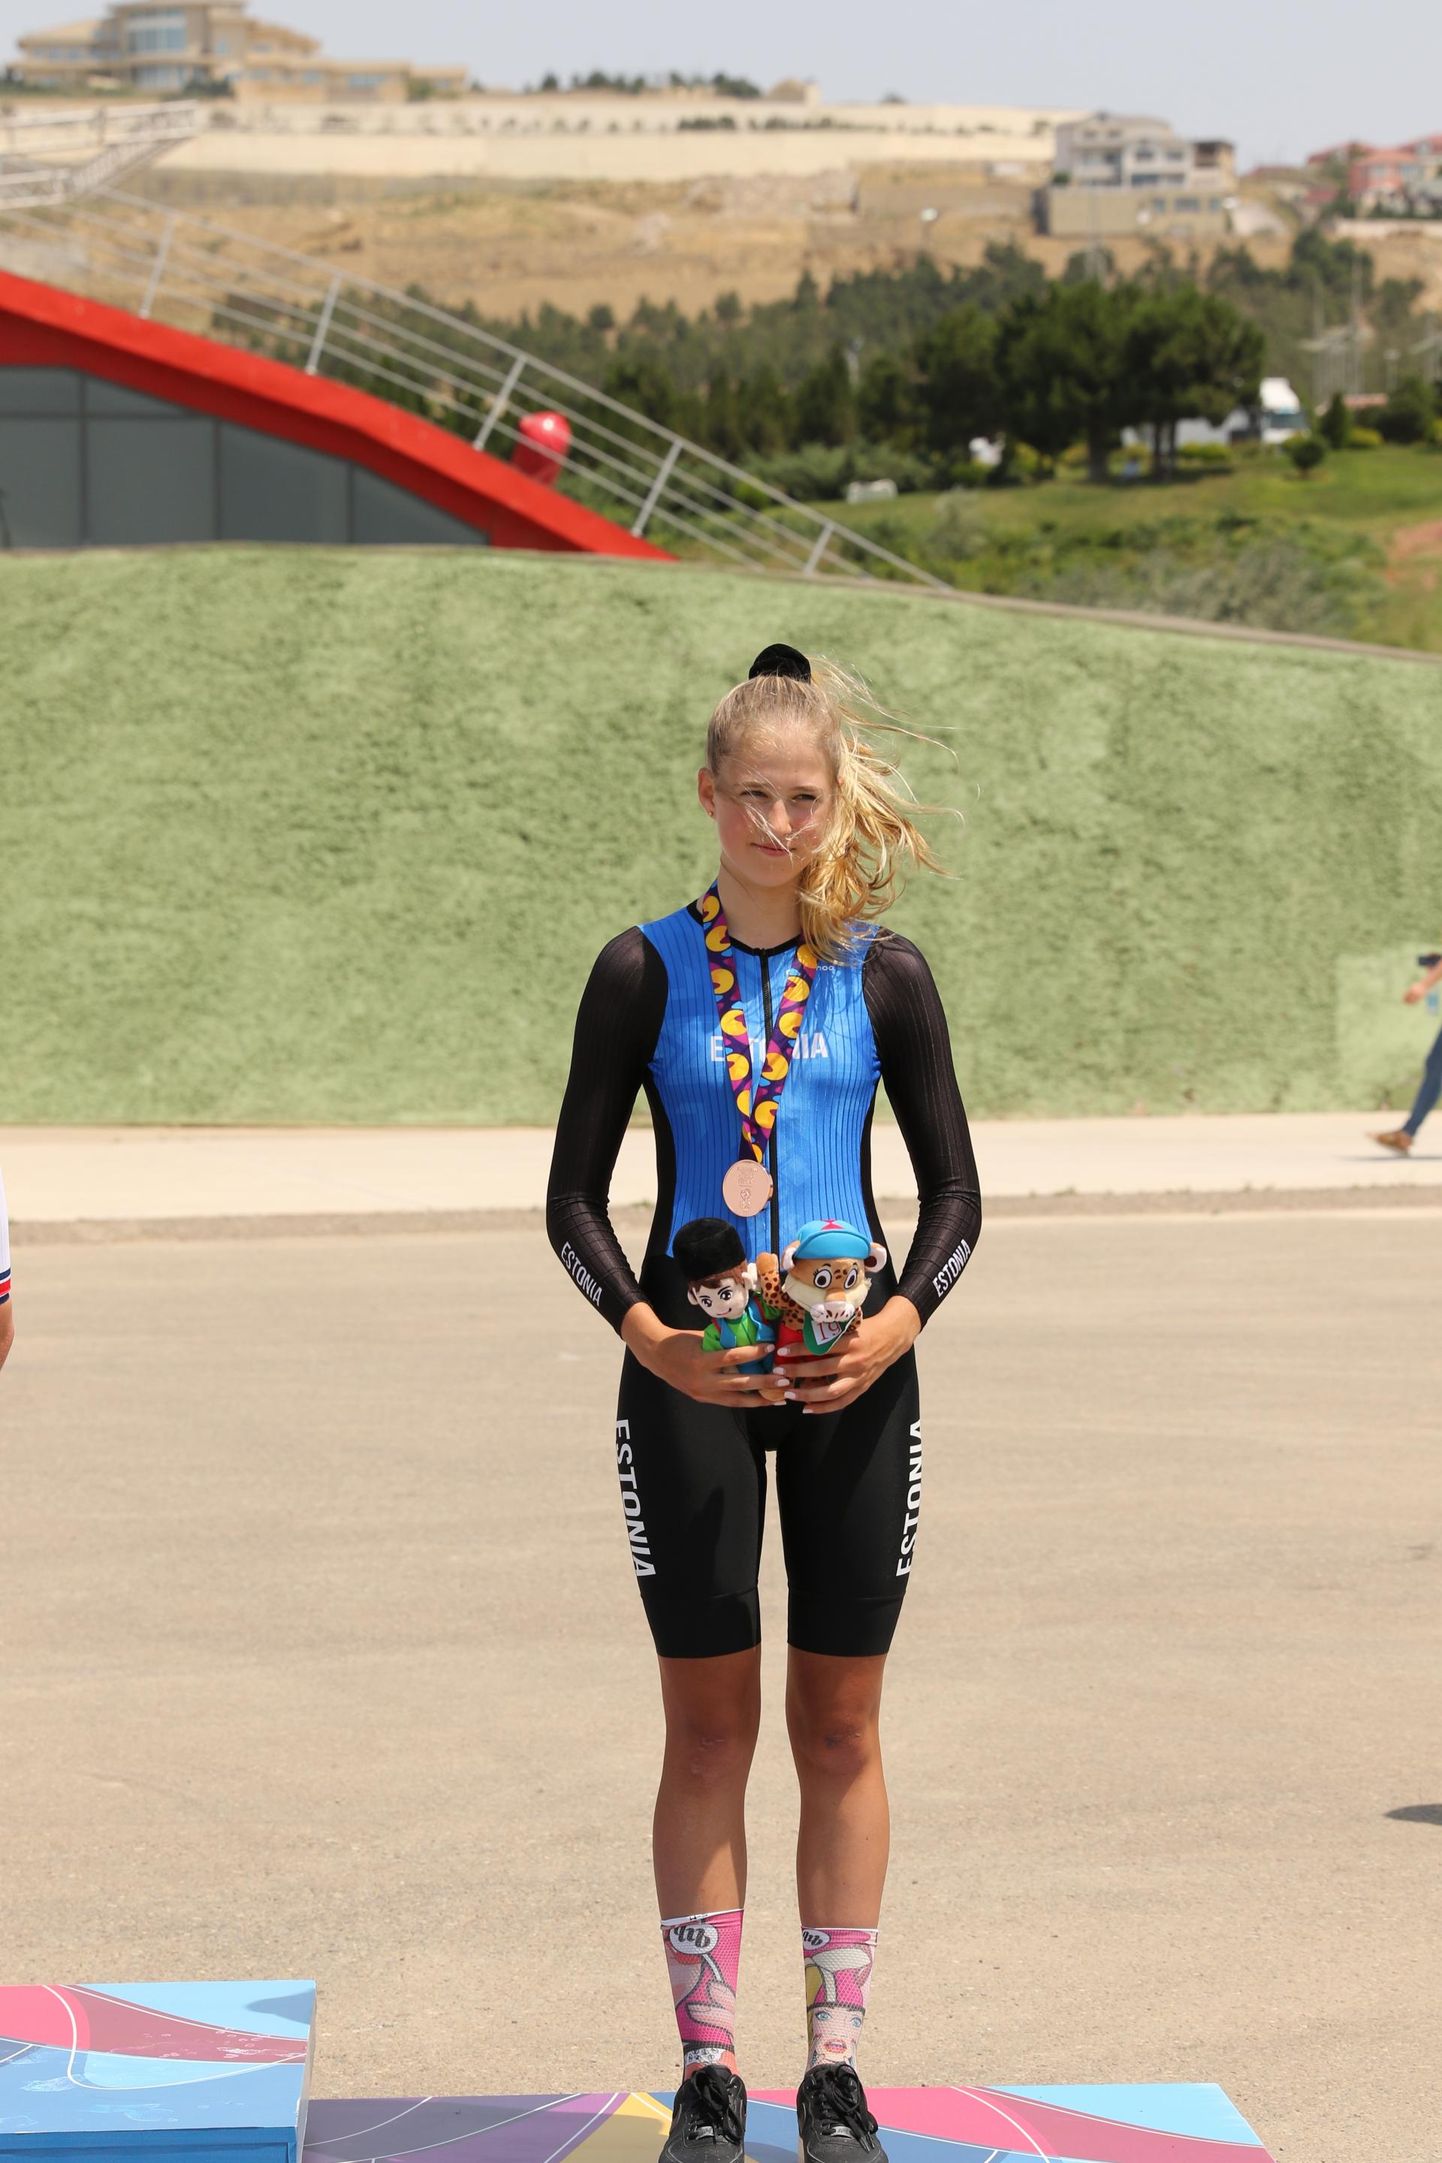 Laura Lizette Sander saavutas Bakuus toimunud noorte olümpiapäevadel kuni 16aastaste tütarlaste eraldistardist sõidus 3.koha